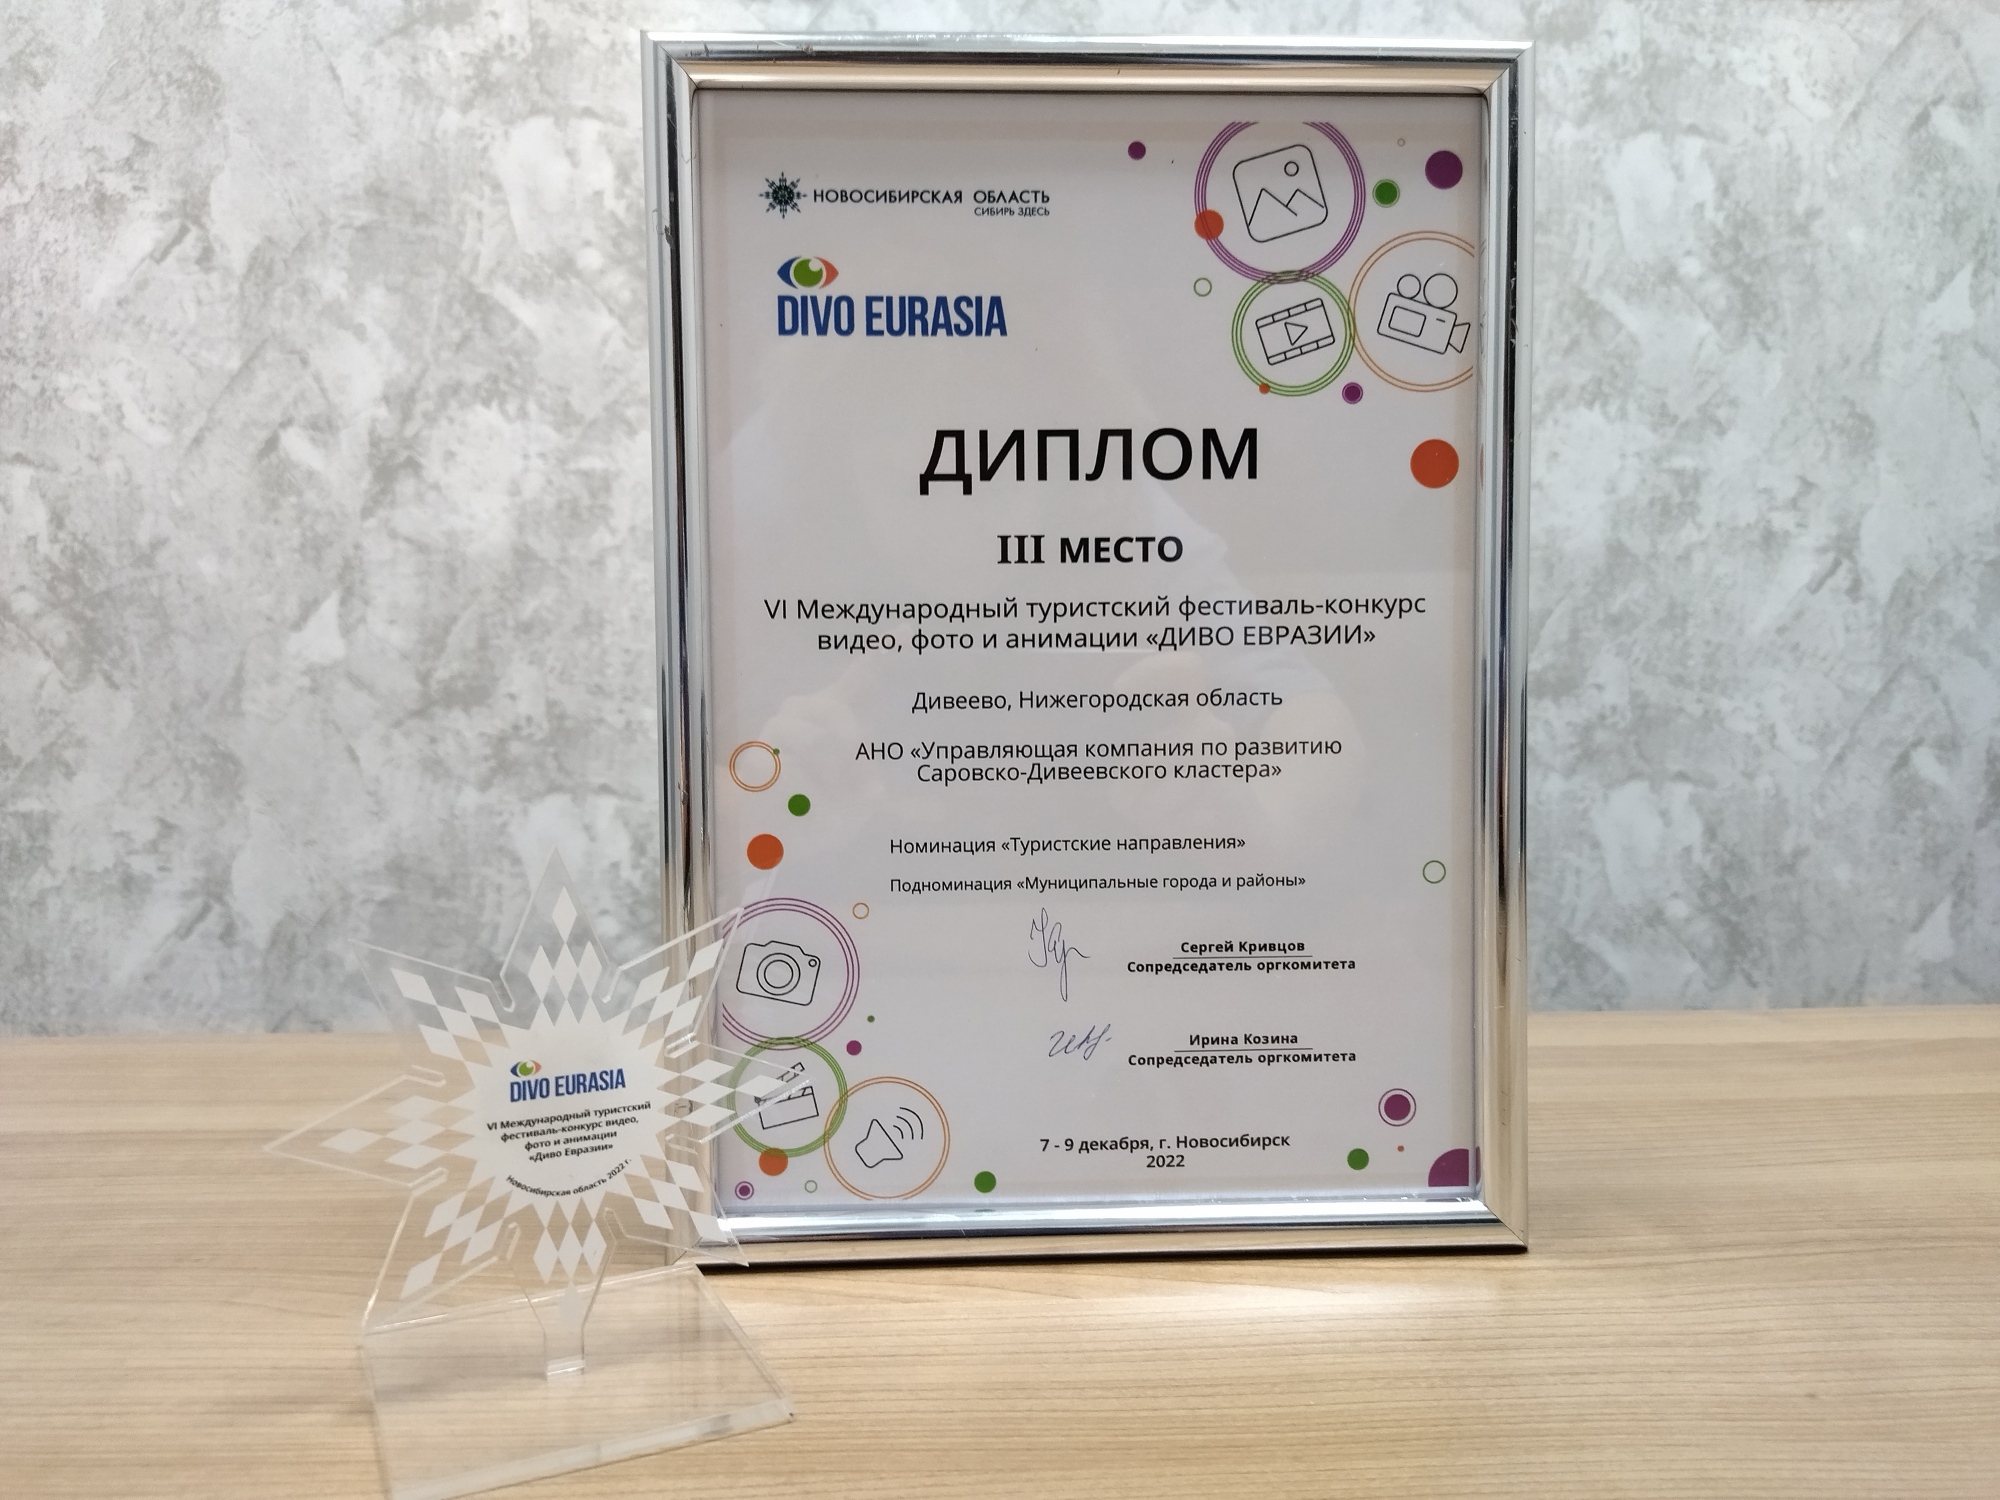 Видеоролик о Дивееве занял третье место в Международном конкурсе «Диво Евразии-2022»